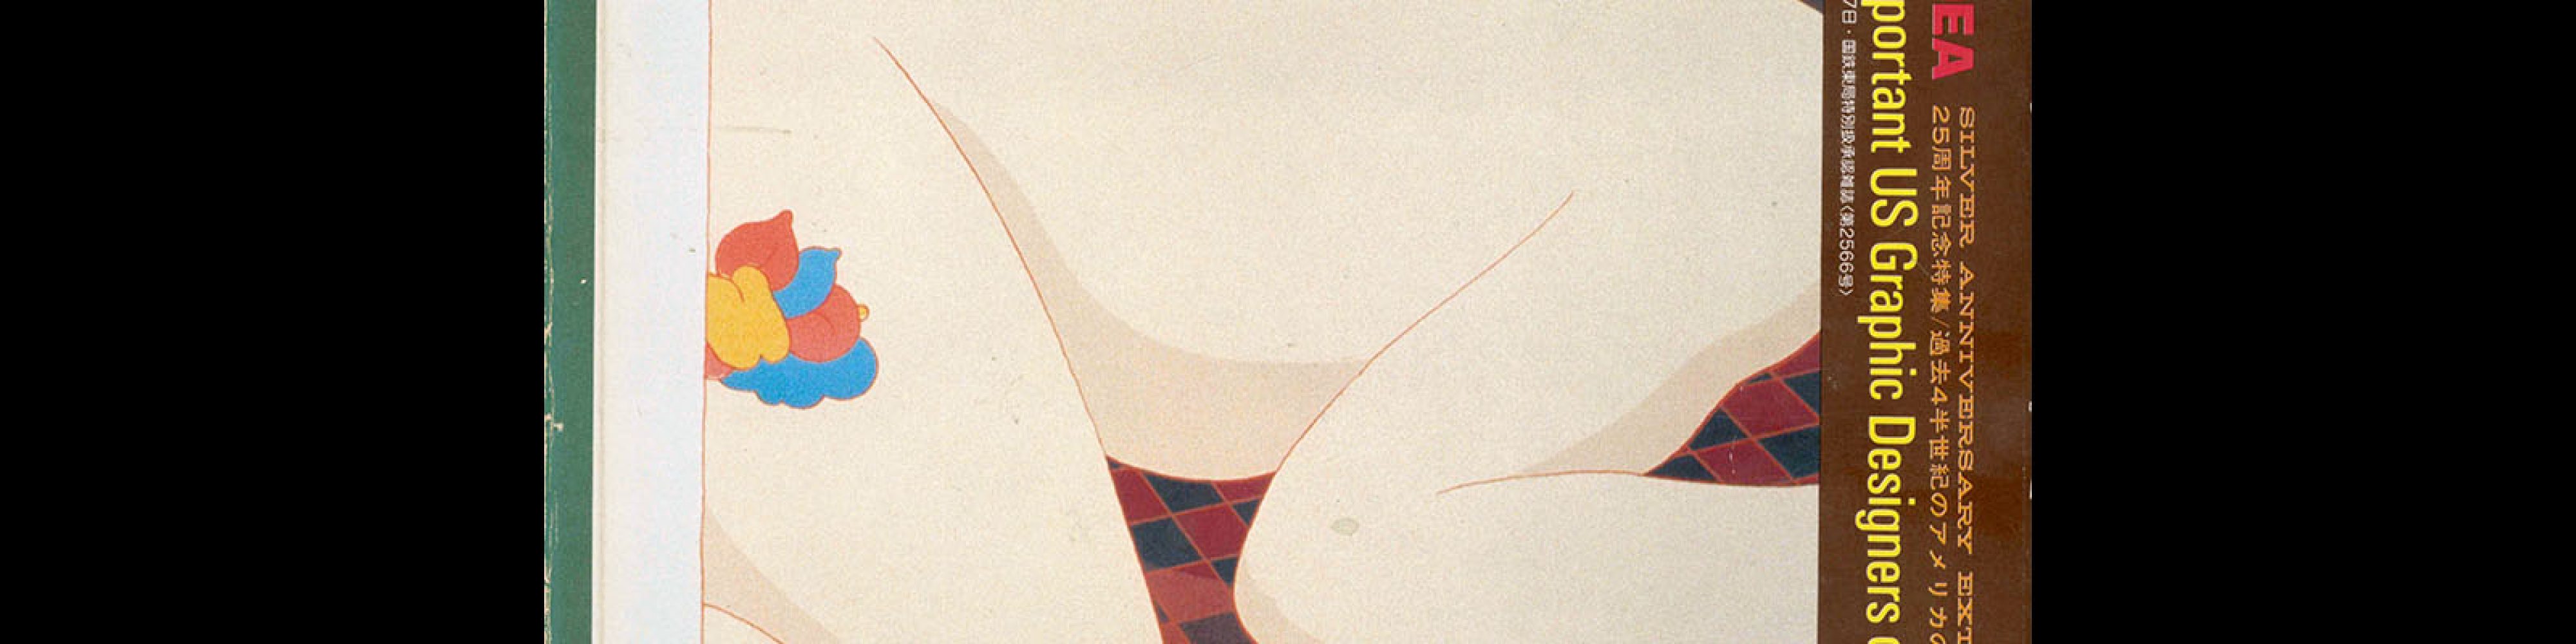 Idea 151, 1978-11. Cover design by Milton Glaser